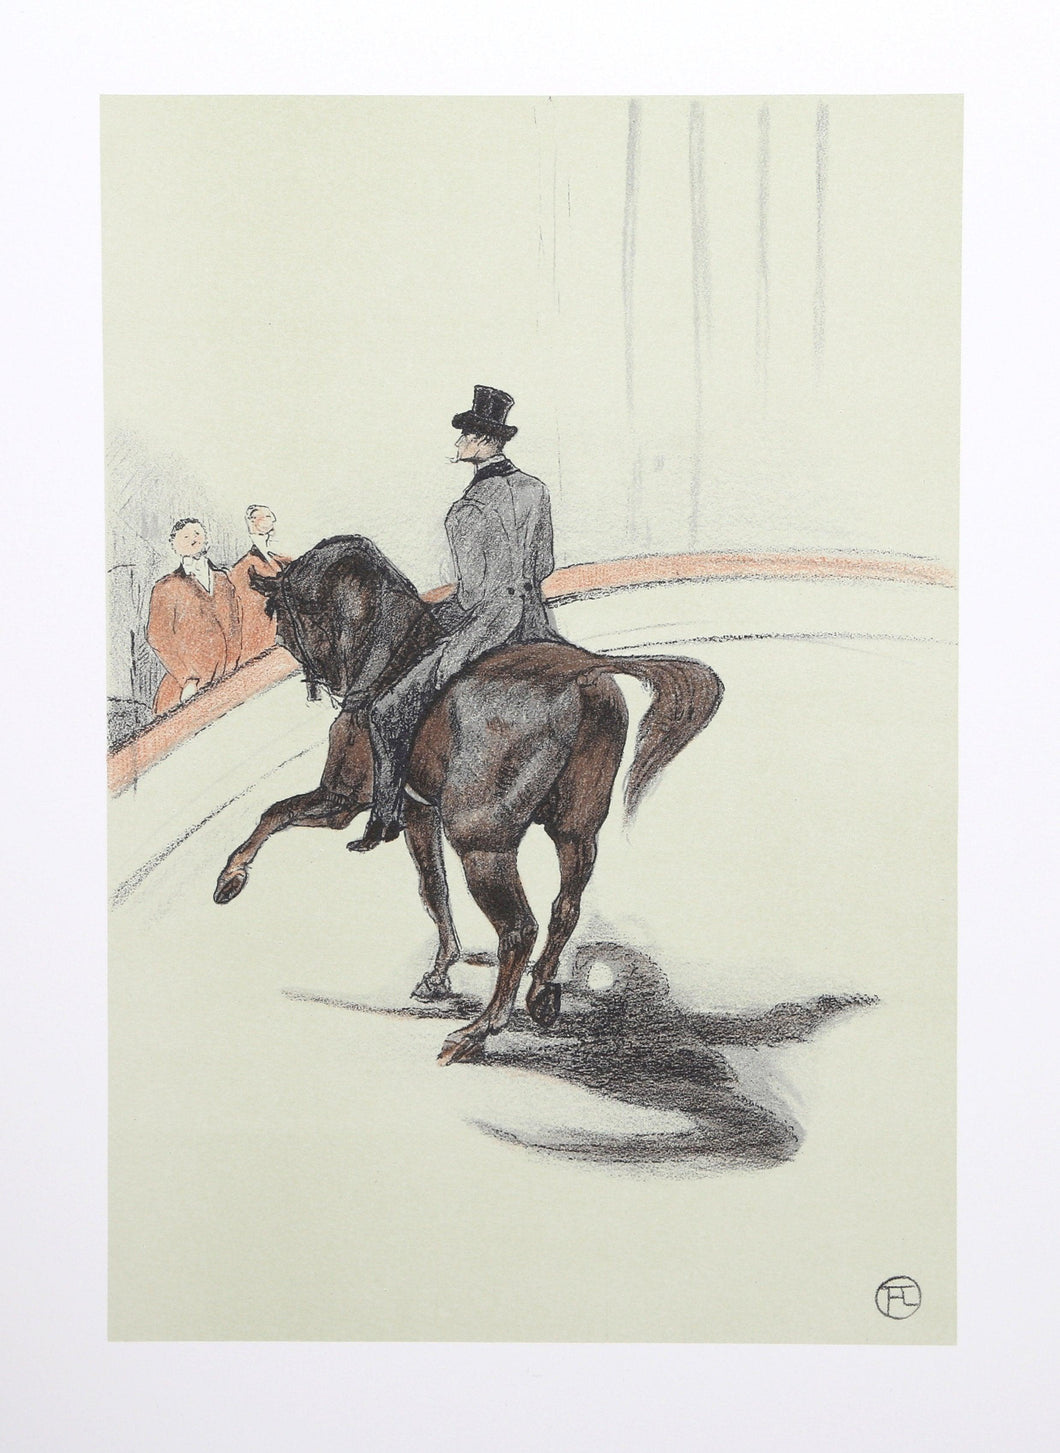 The Circus Portfolio 15 Lithograph | Henri de Toulouse-Lautrec,{{product.type}}